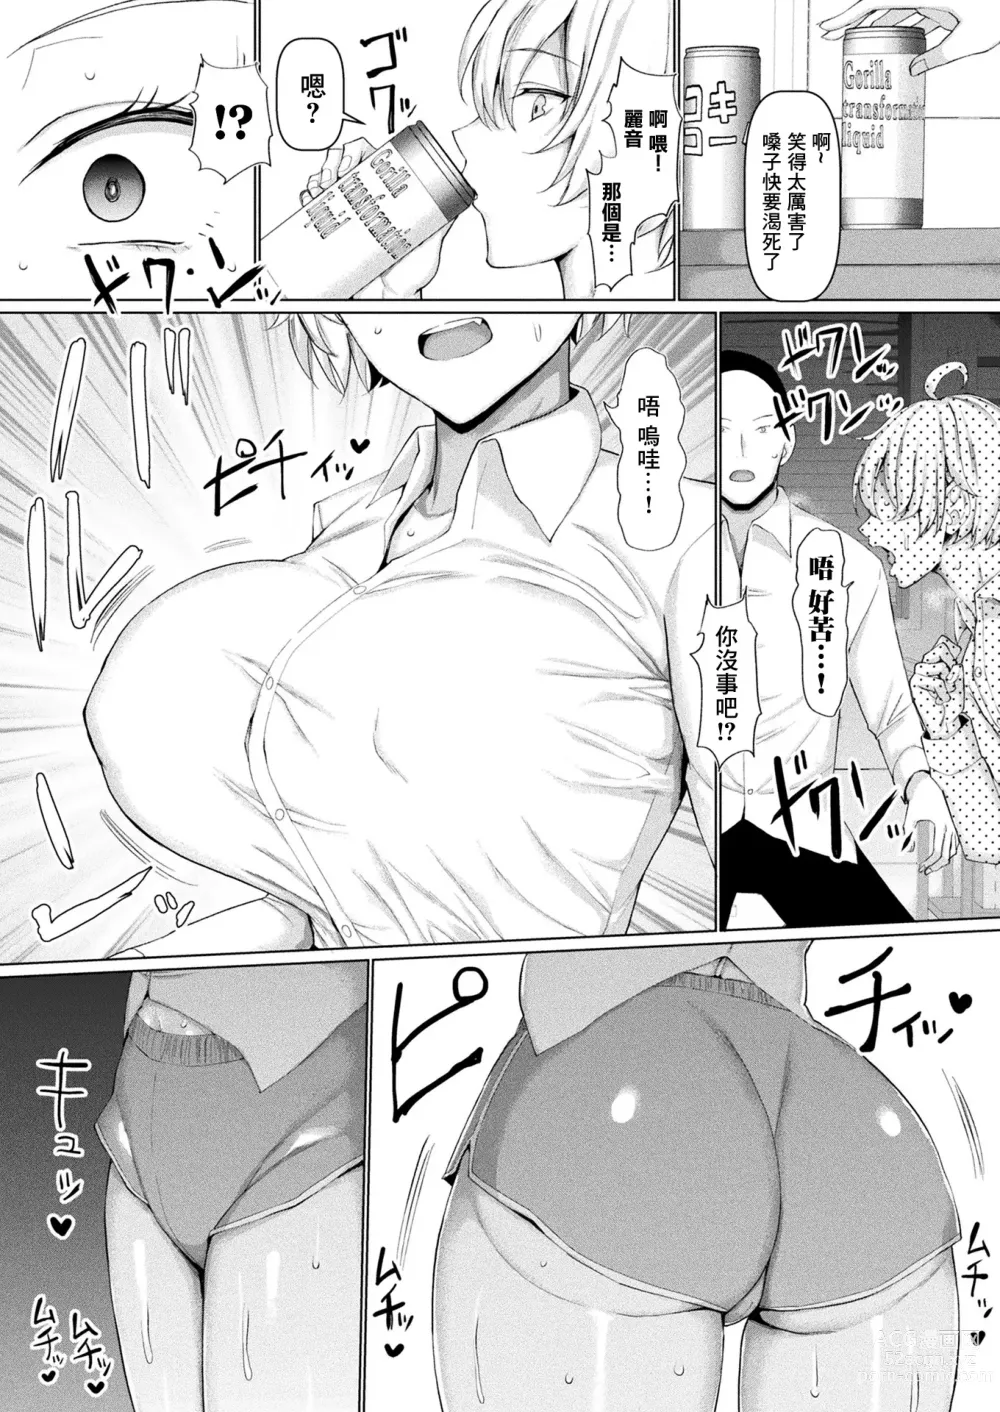 Page 5 of manga Mabudachi Nagachichi Daihenshin